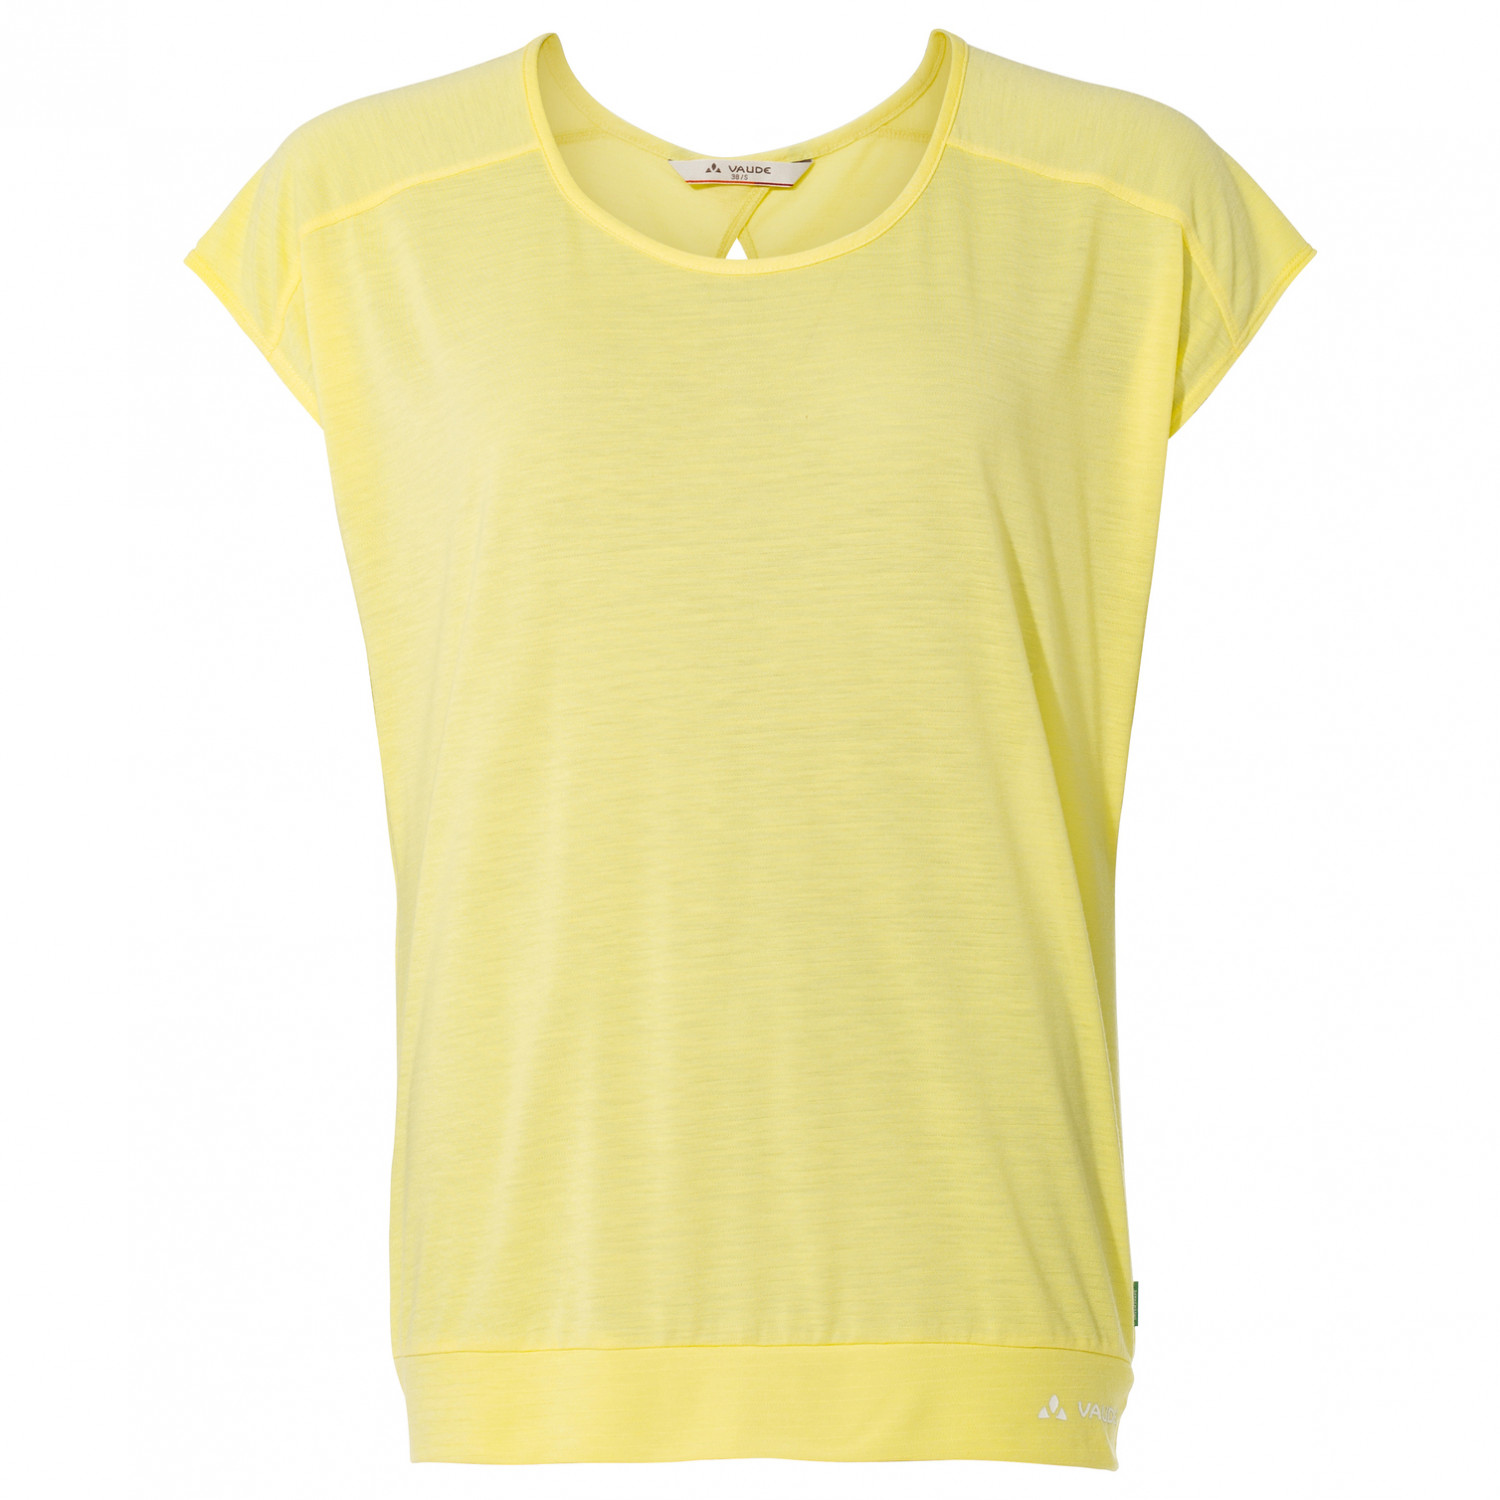 Функциональная рубашка Vaude Women's Skomer T Shirt III, цвет Mimosa функциональная рубашка vaude tekoa t shirt iii цвет nordic blue